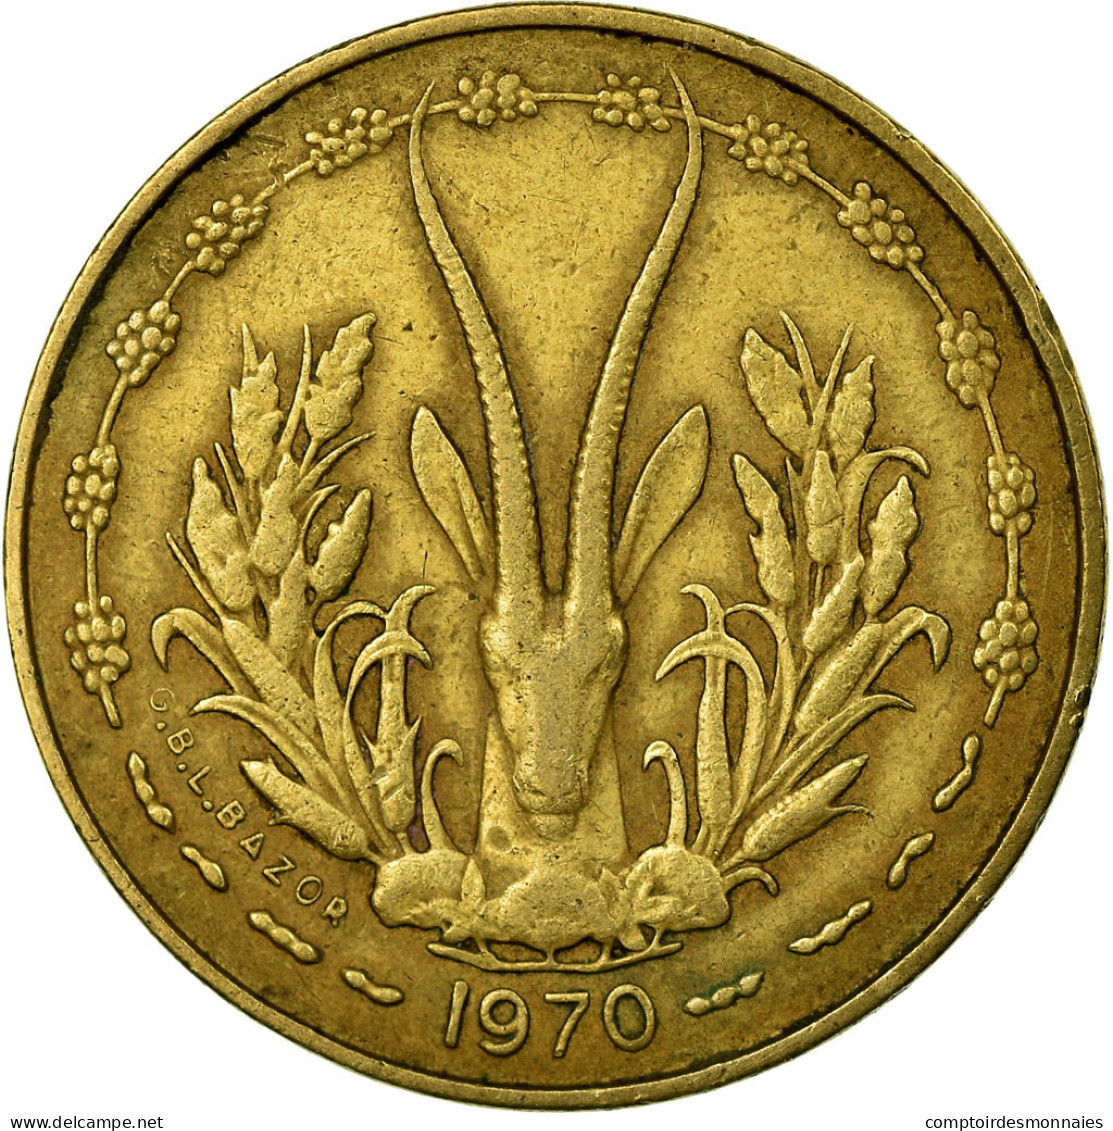 Monnaie, West African States, 5 Francs, 1970, Paris, TTB - Ivoorkust